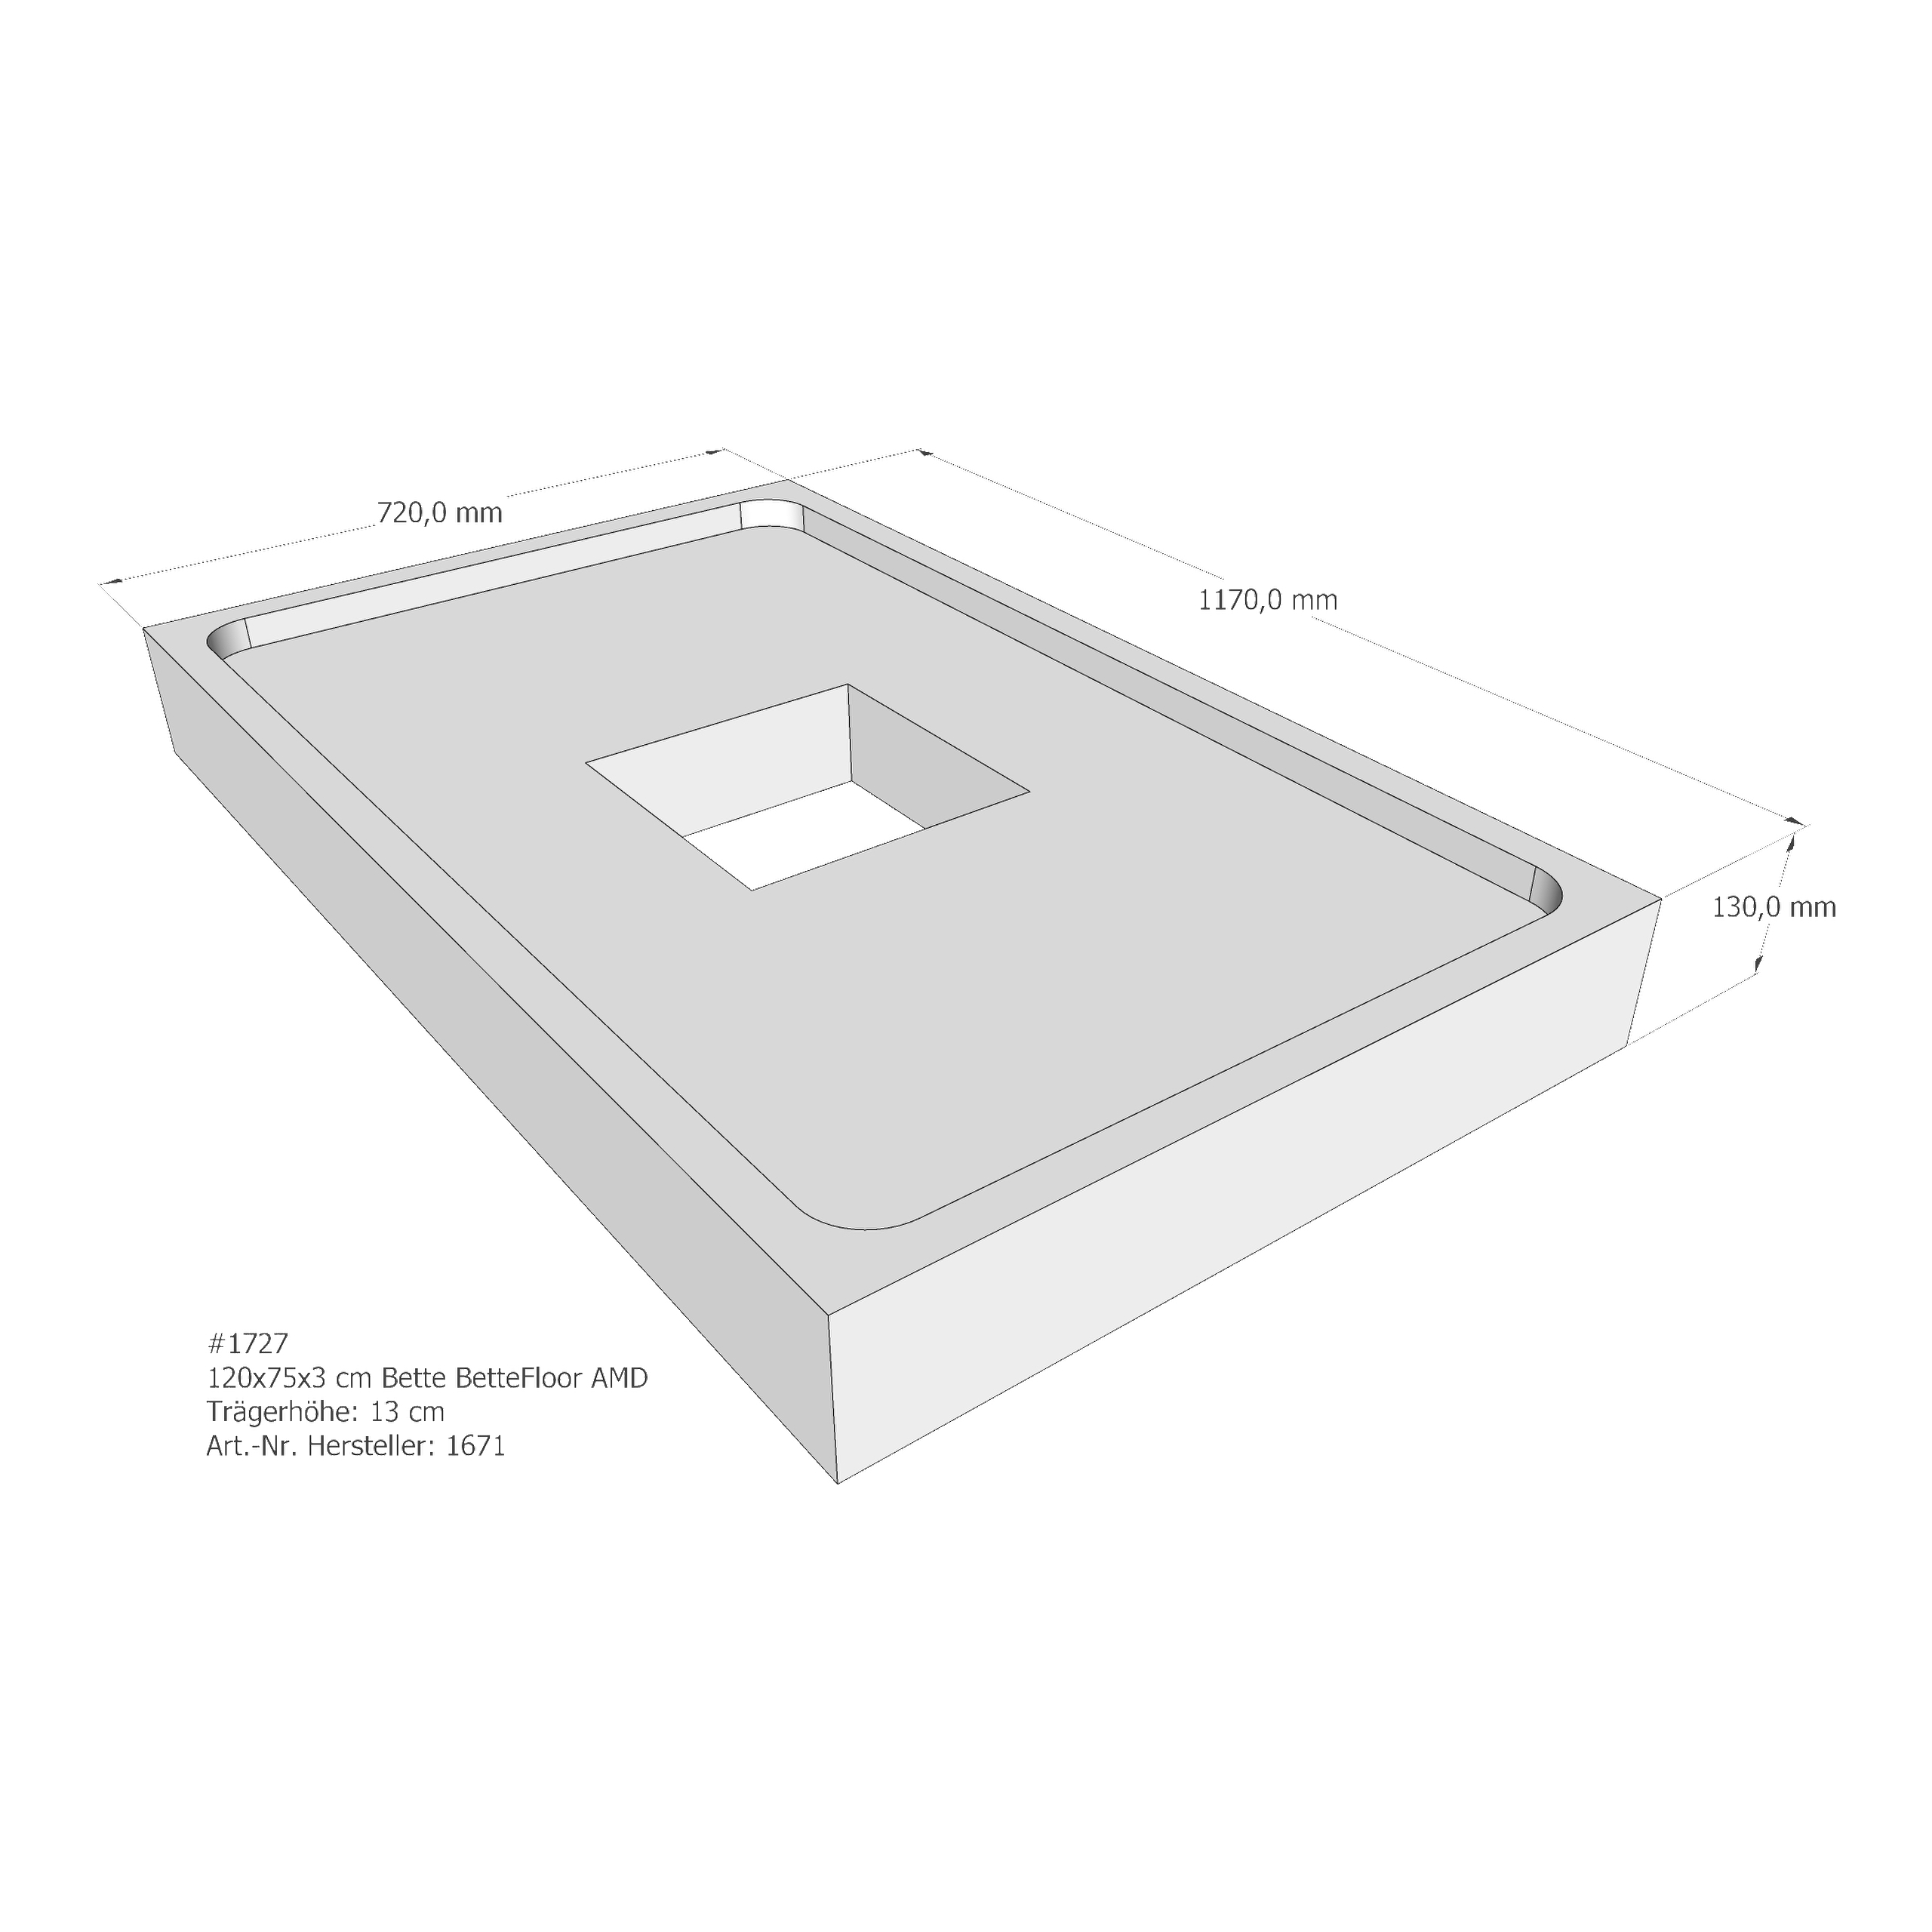 Duschwannenträger Bette BetteFloor 120x75x3 cm AMD